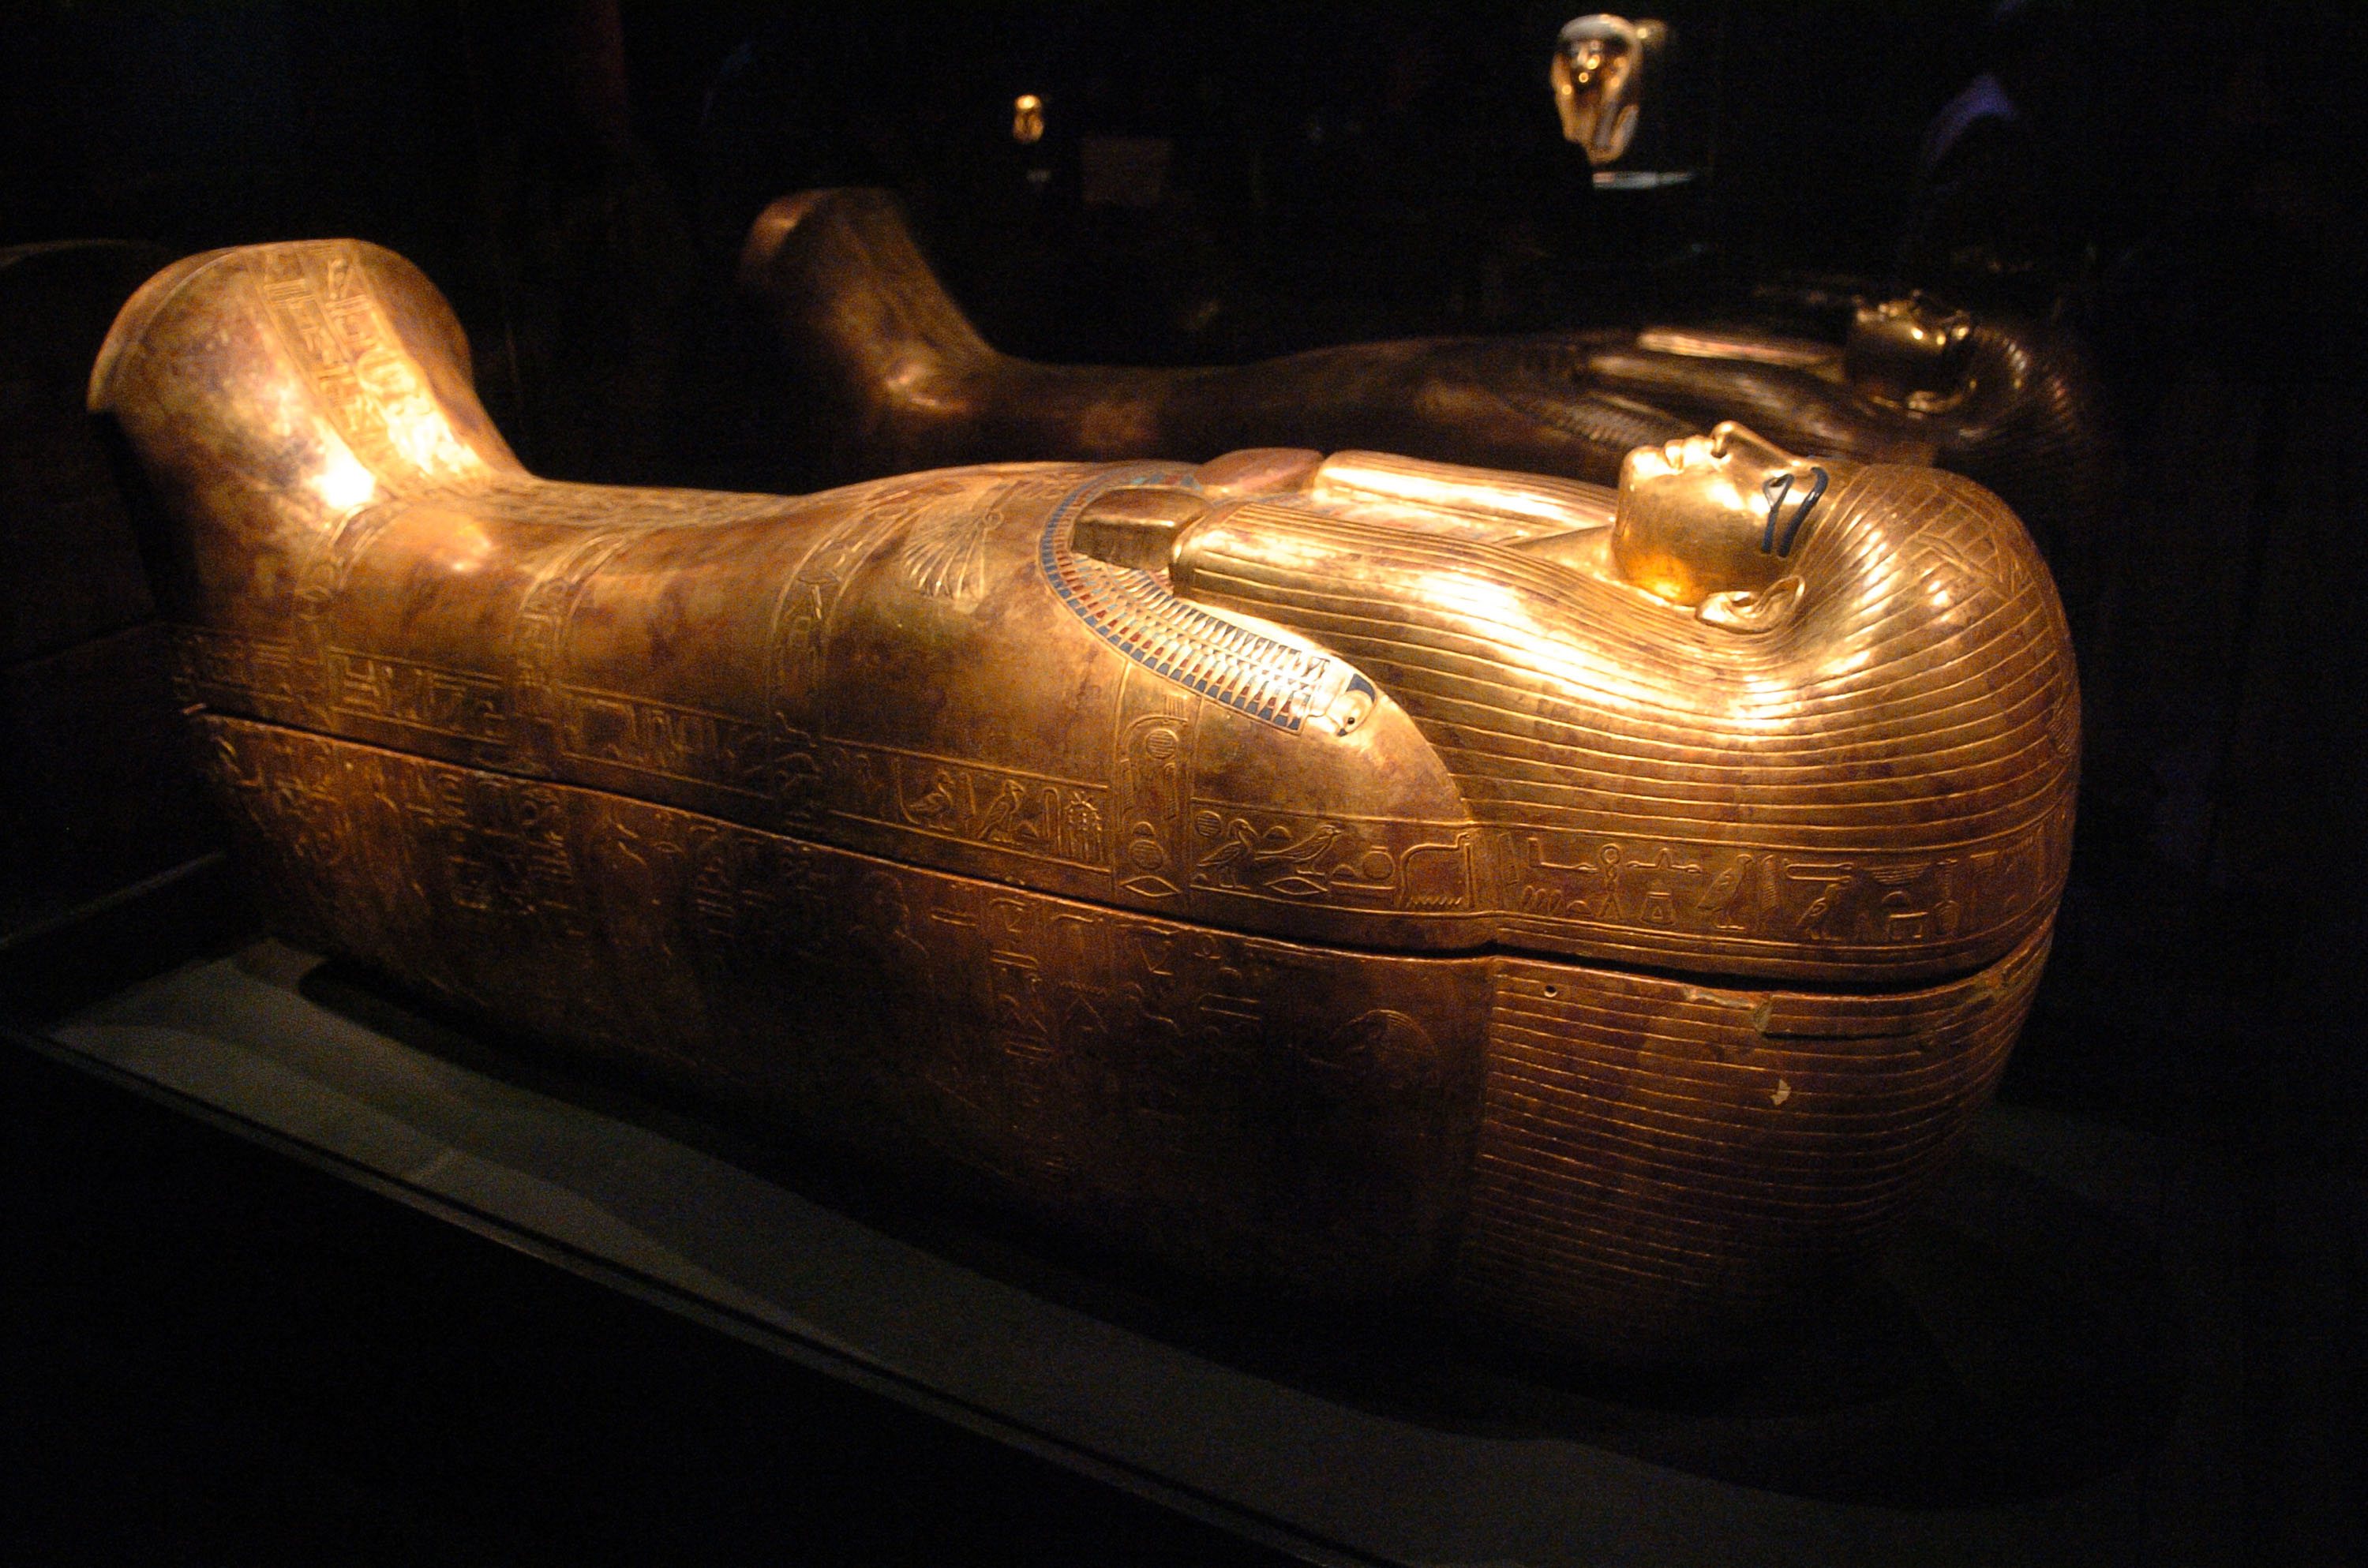 Há 99 anos, a 16 de fevereiro de 1923, foi aberto o túmulo do faraó egípcio Tutankhamon